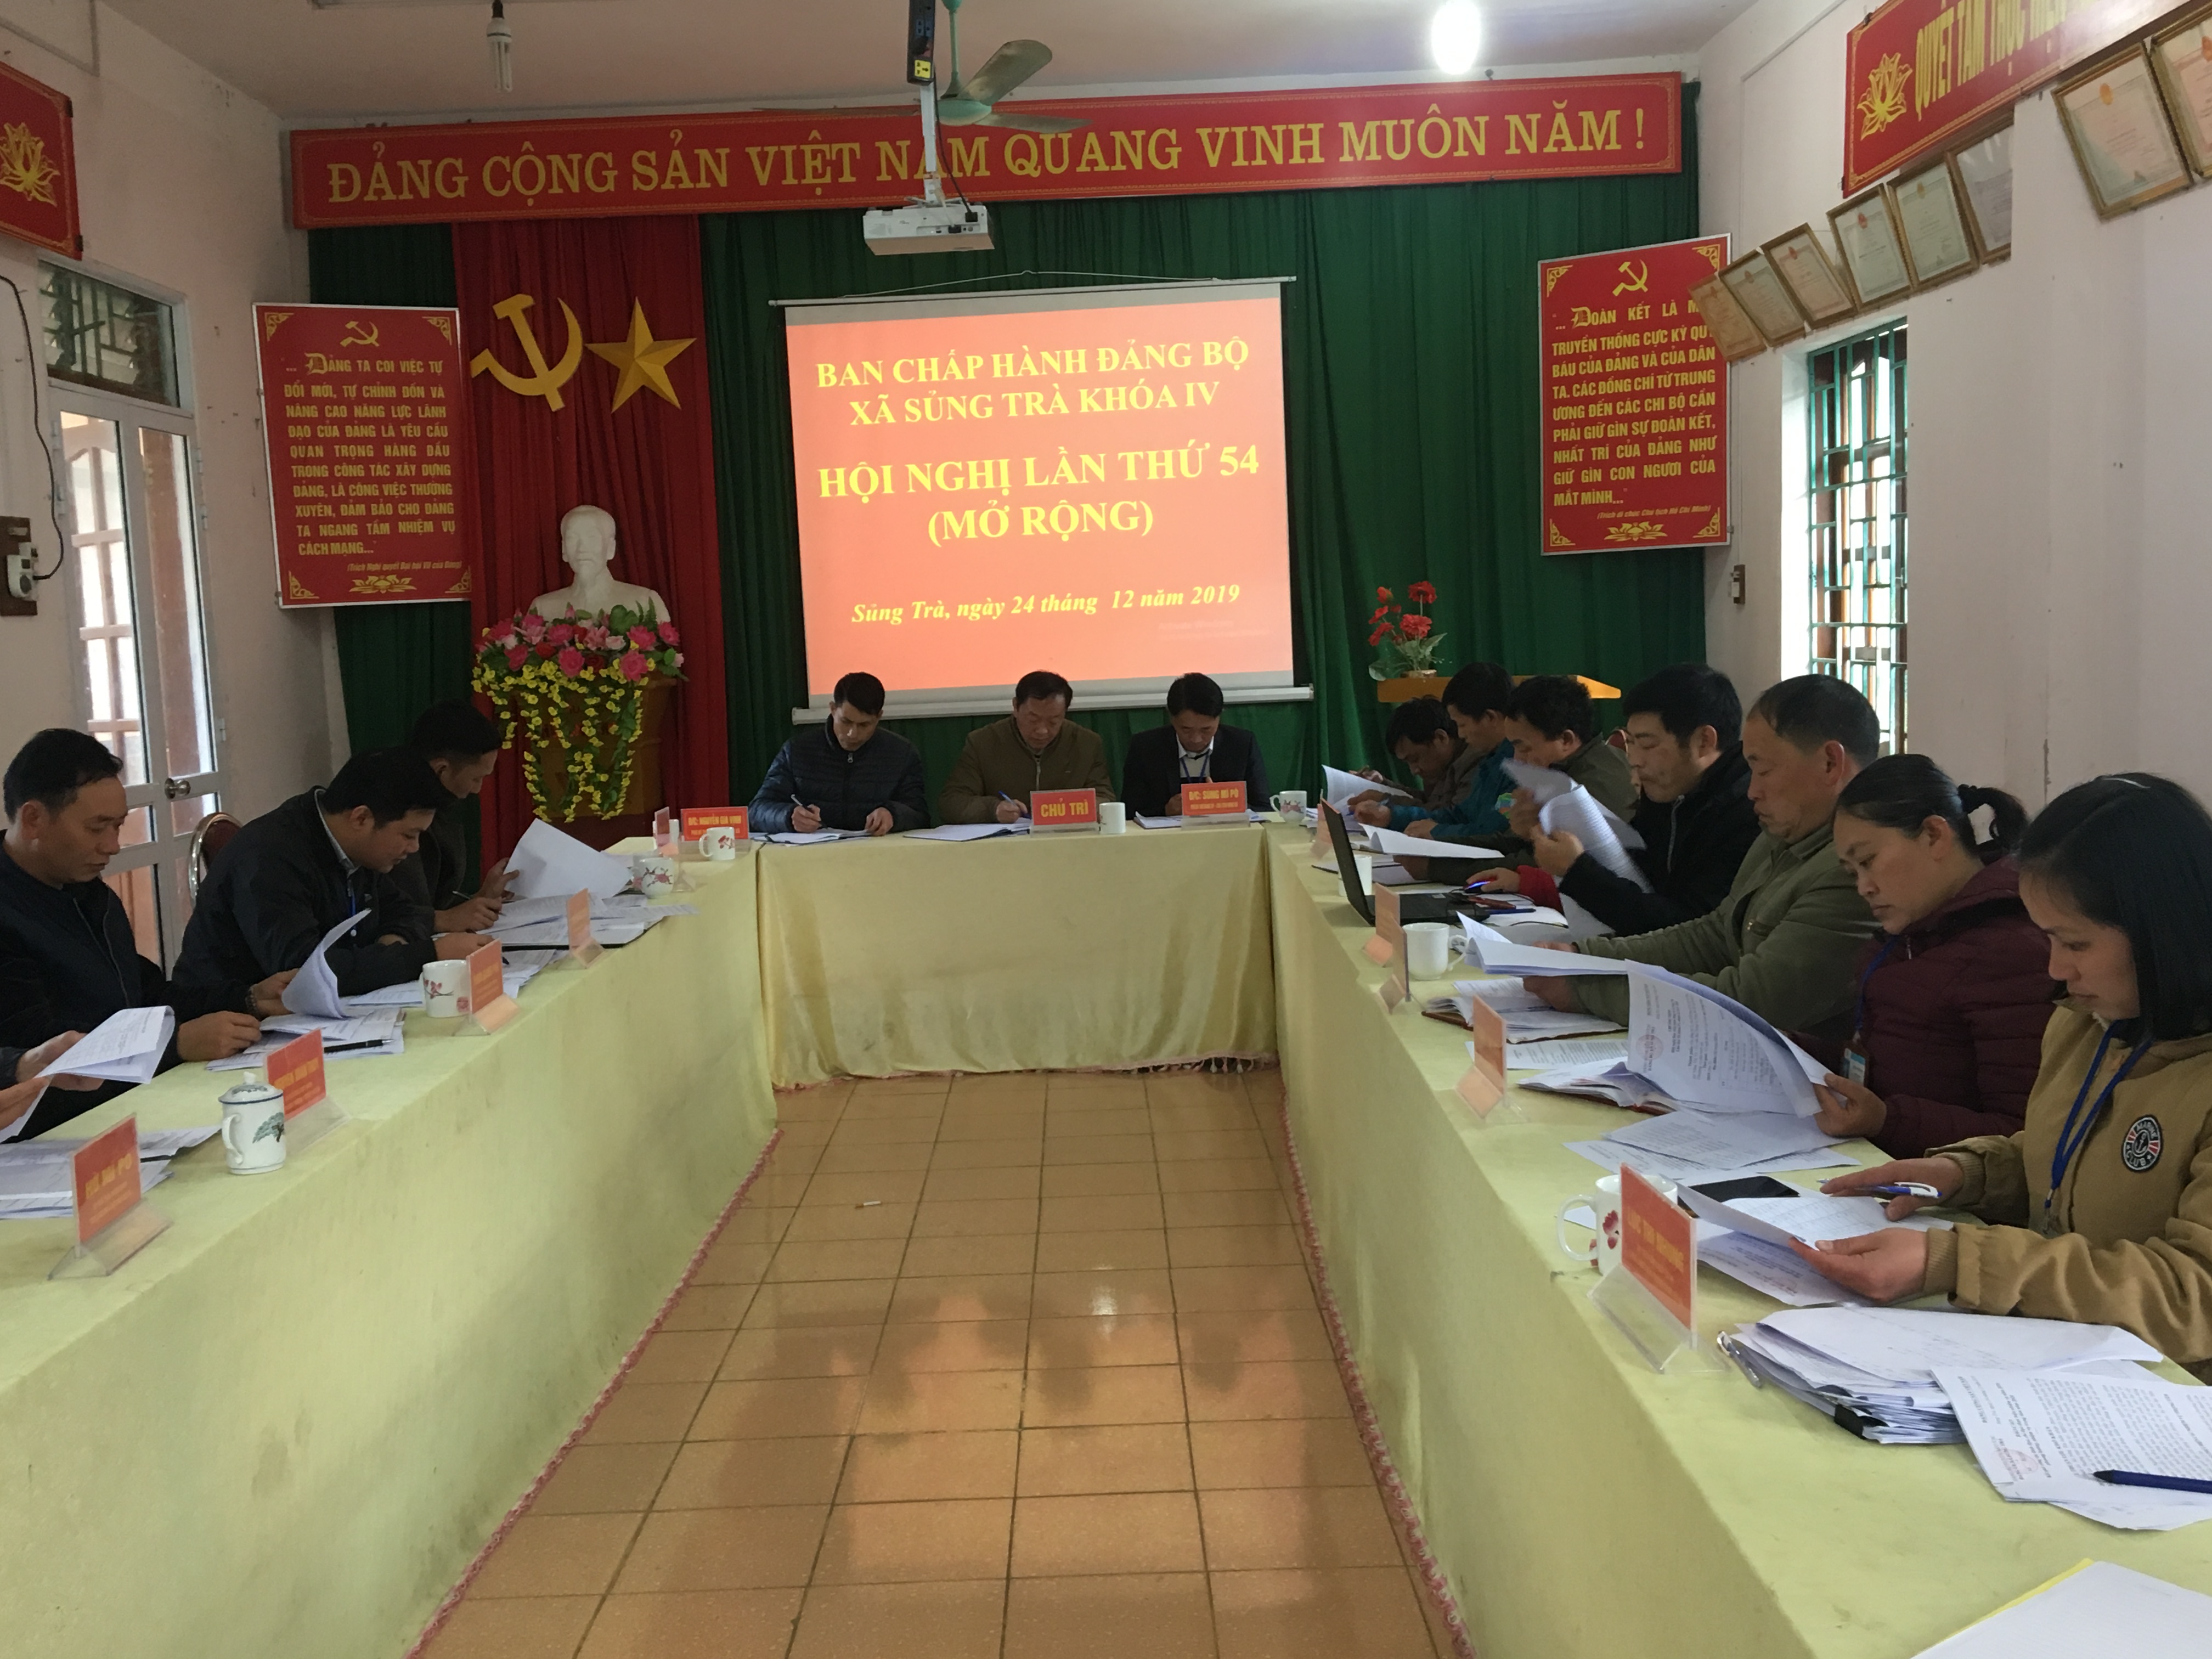 Hội nghị Ban chấp hành Đảng bộ xã Sủng Trà lần thứ 54 (mở rộng) khóa IV, nhiệm kỳ 2015 – 2020